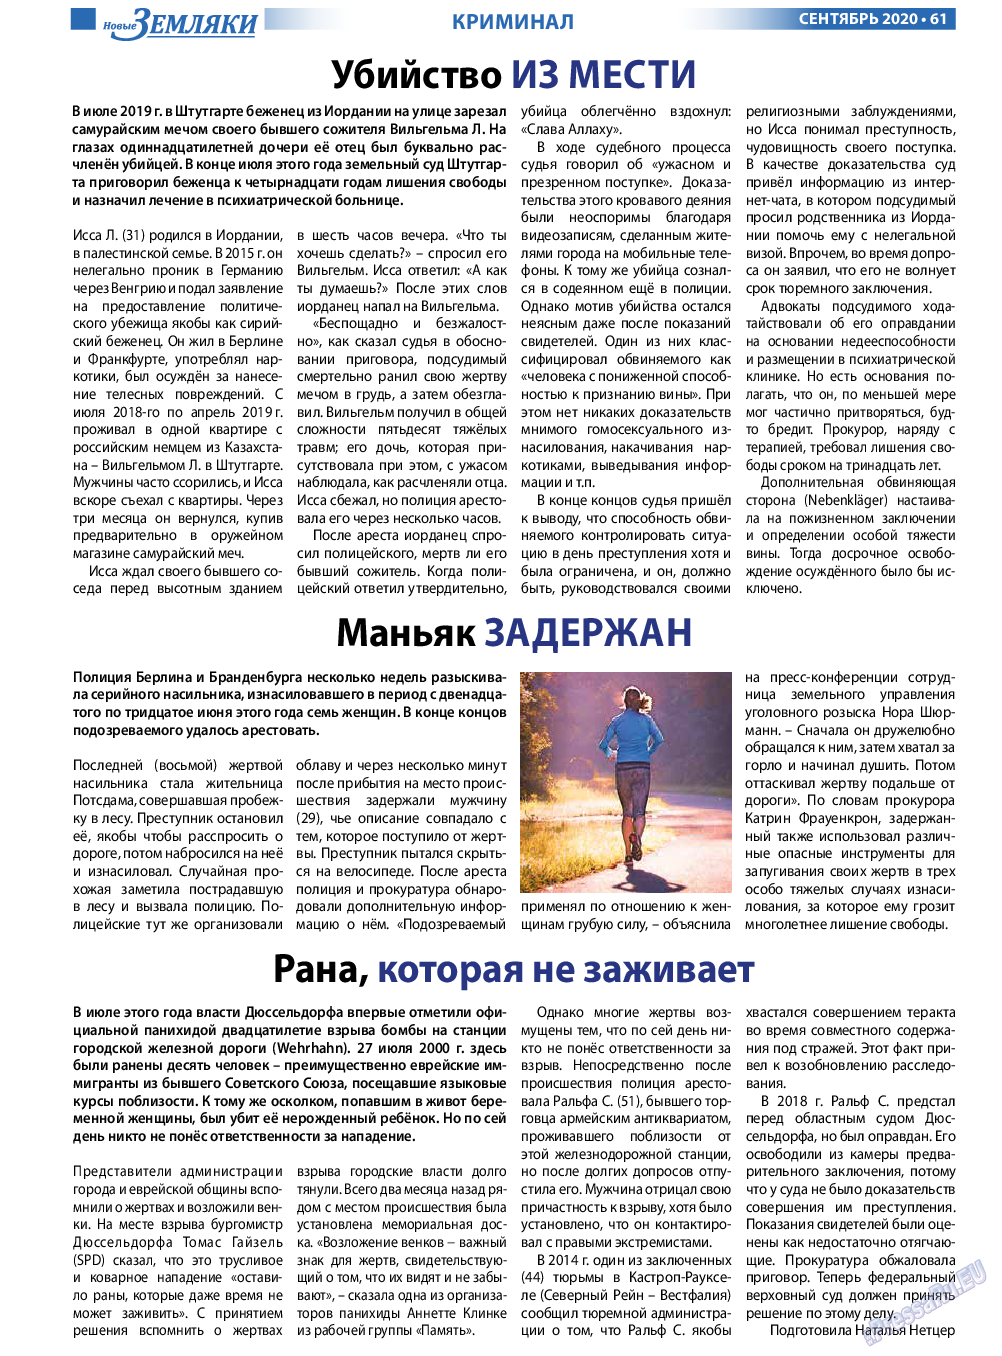 Новые Земляки, газета. 2020 №9 стр.61